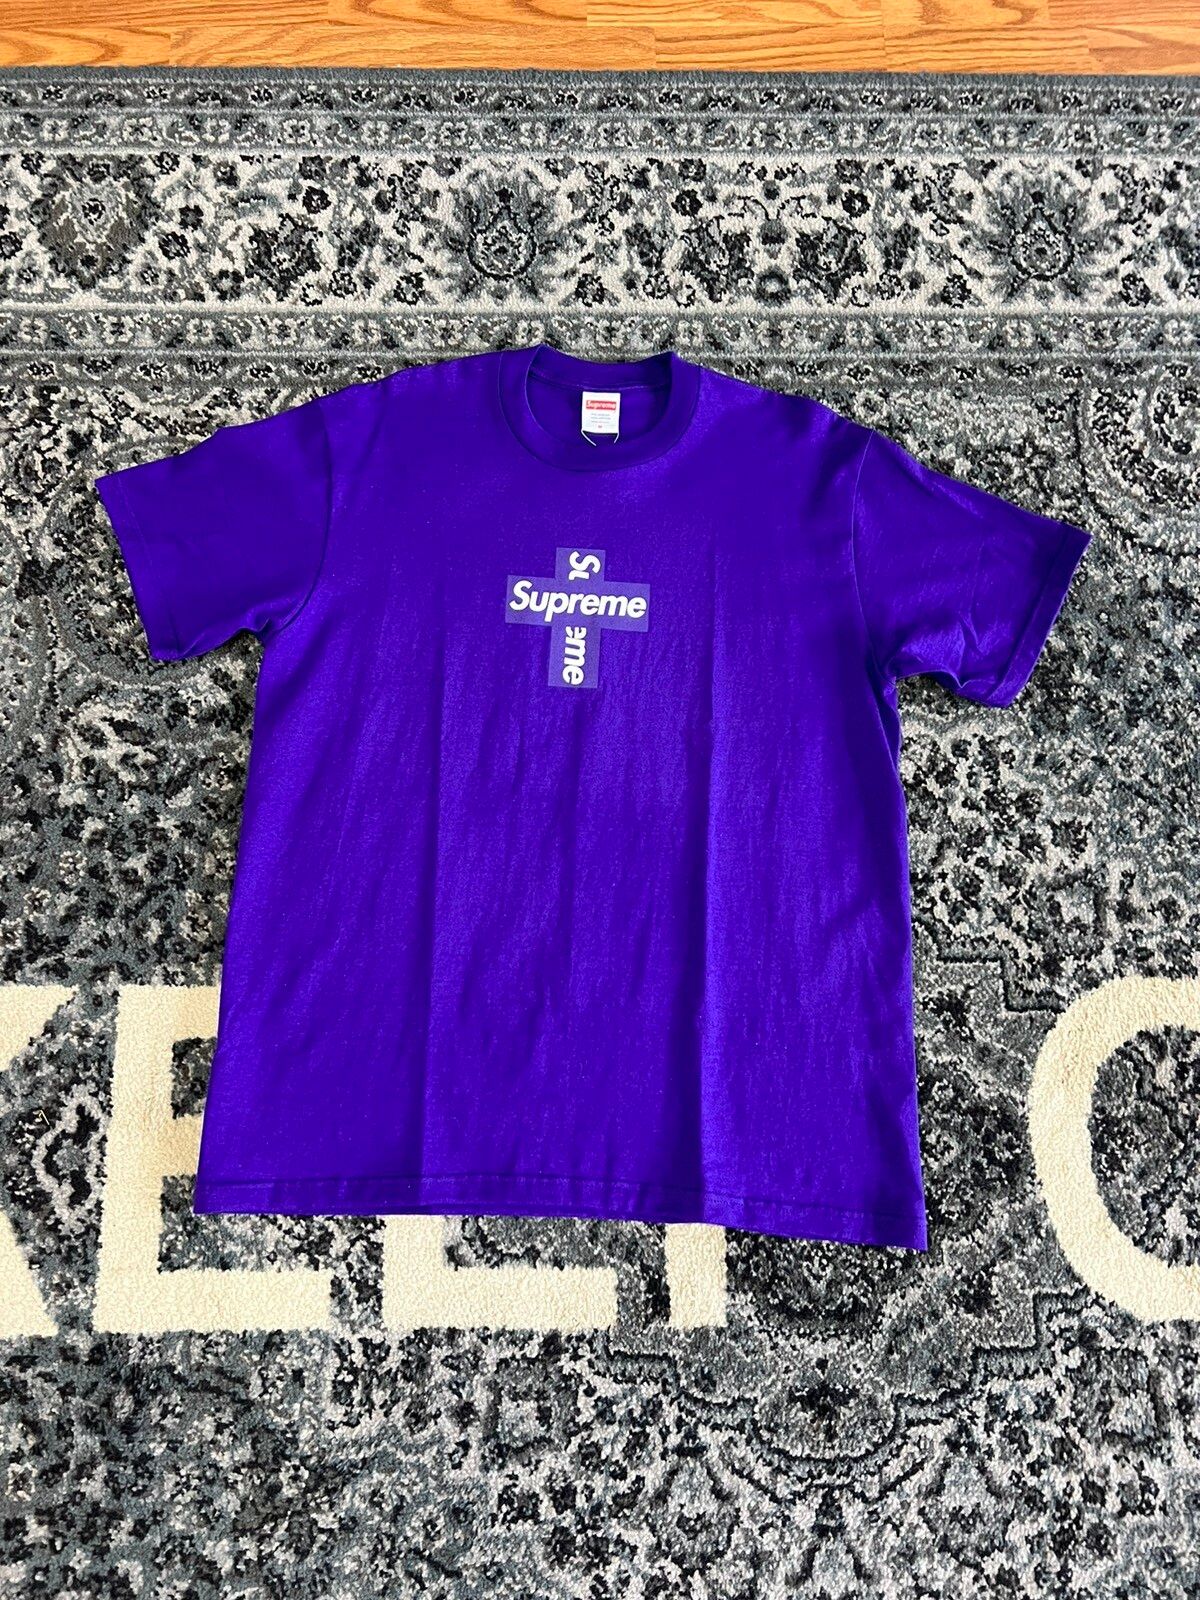 Supreme Supreme Cross Box Logo Purple Size M | Grailed